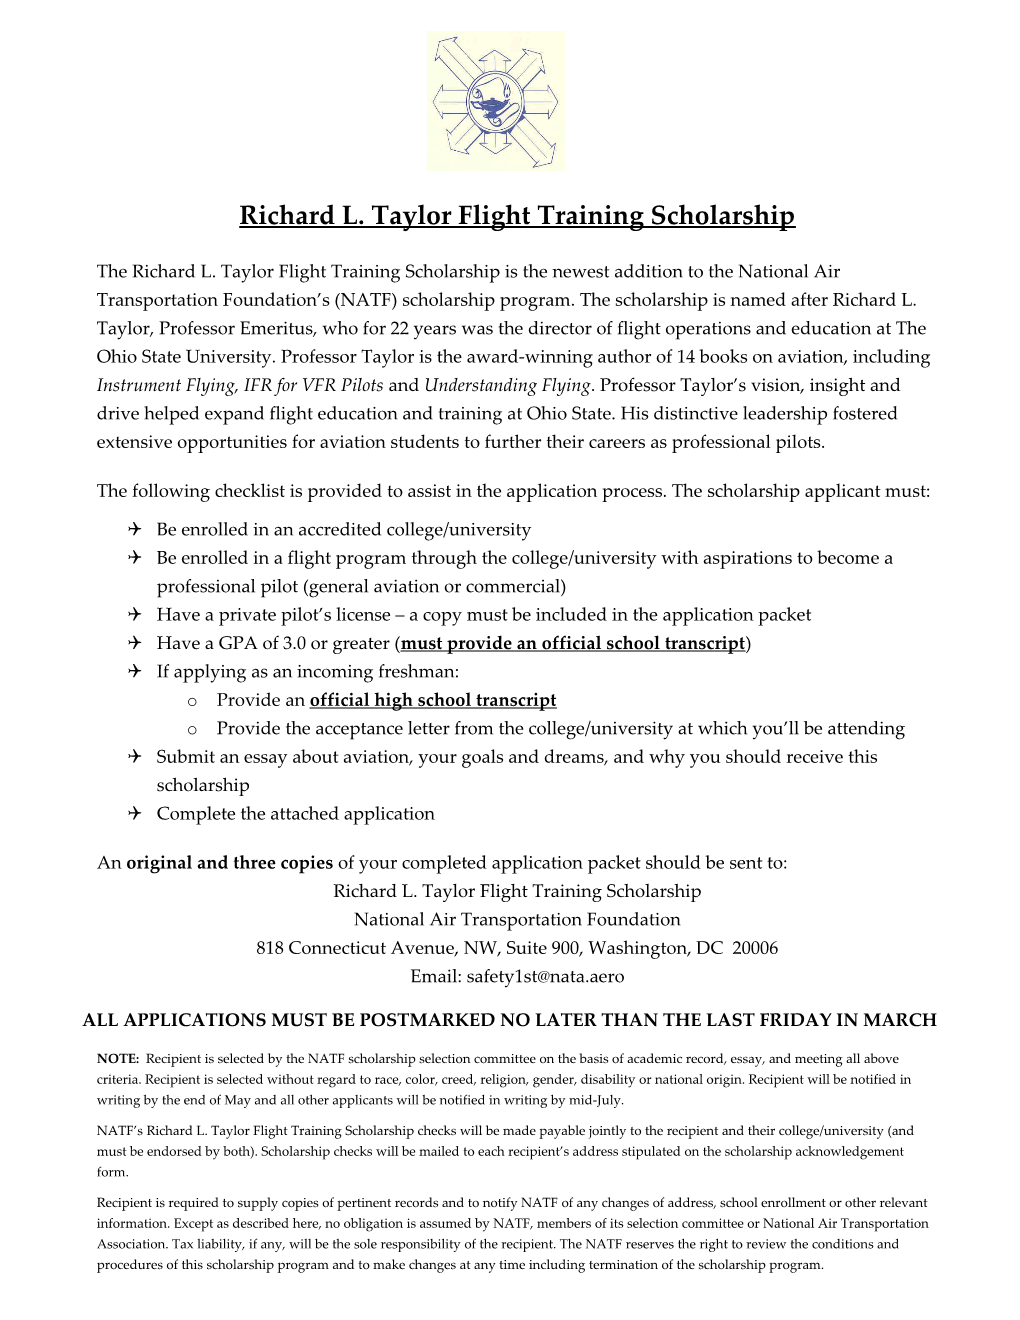 Richard L. Taylor Flight Training Scholarship